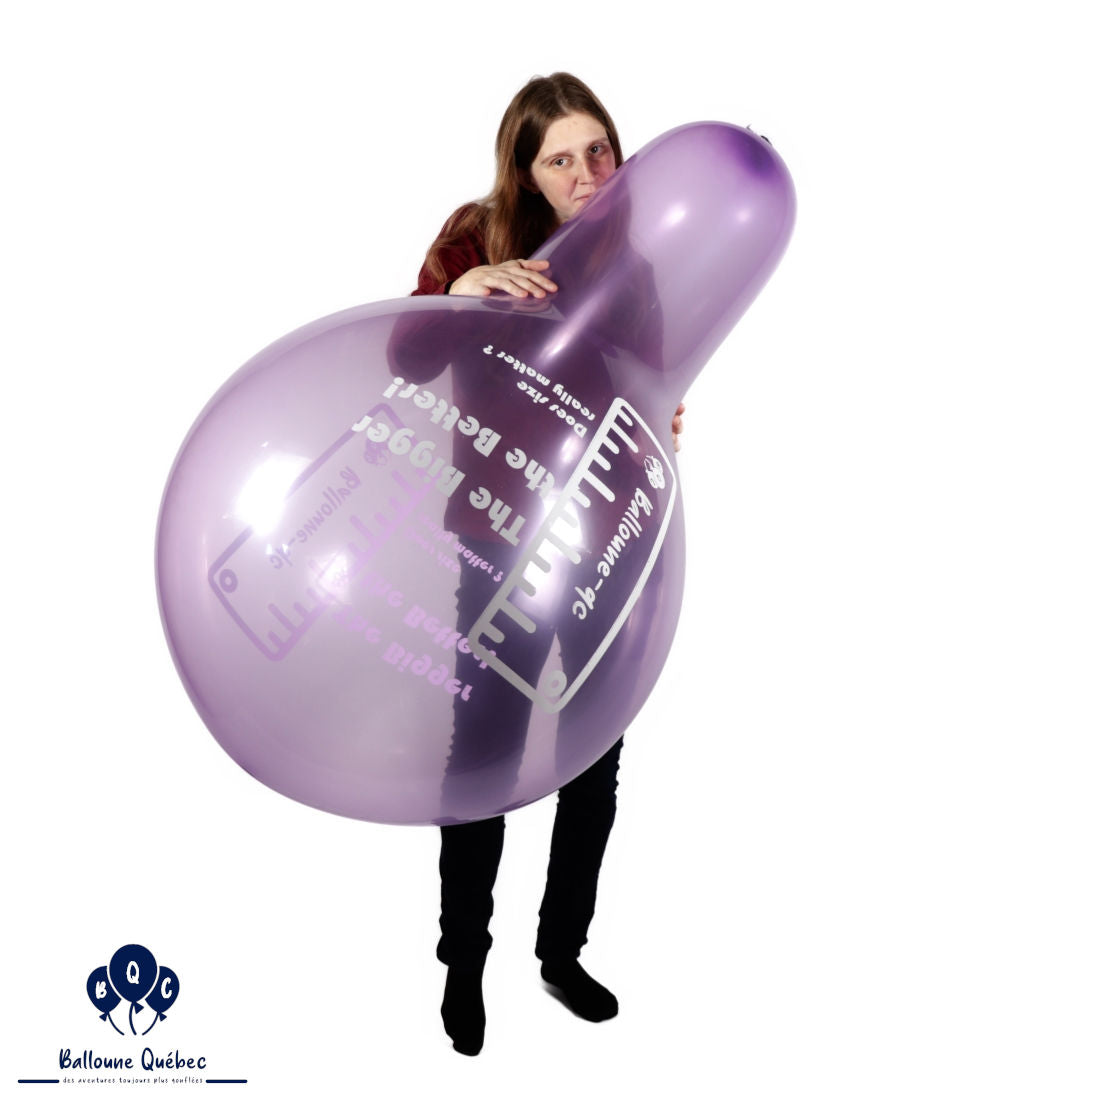 Balloon weight – Queen Bee Soiree